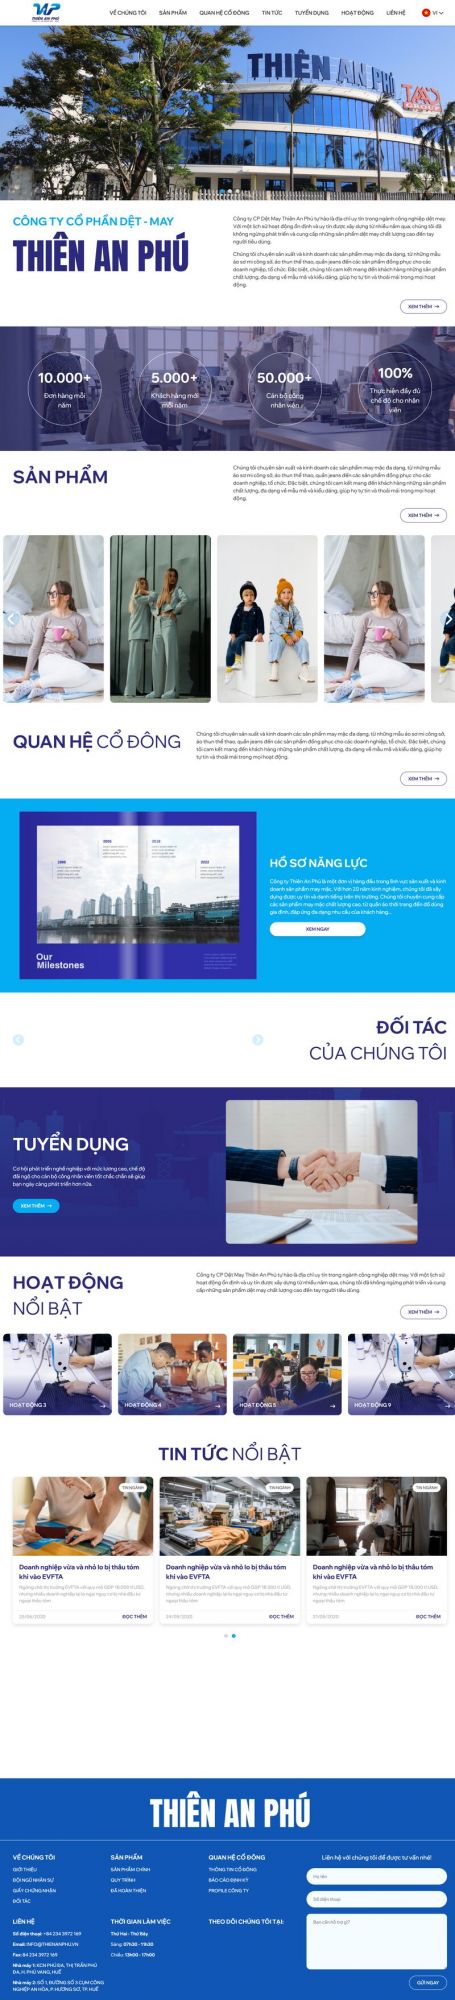 Website Công ty Cổ phần dệt may Thiên An Phú